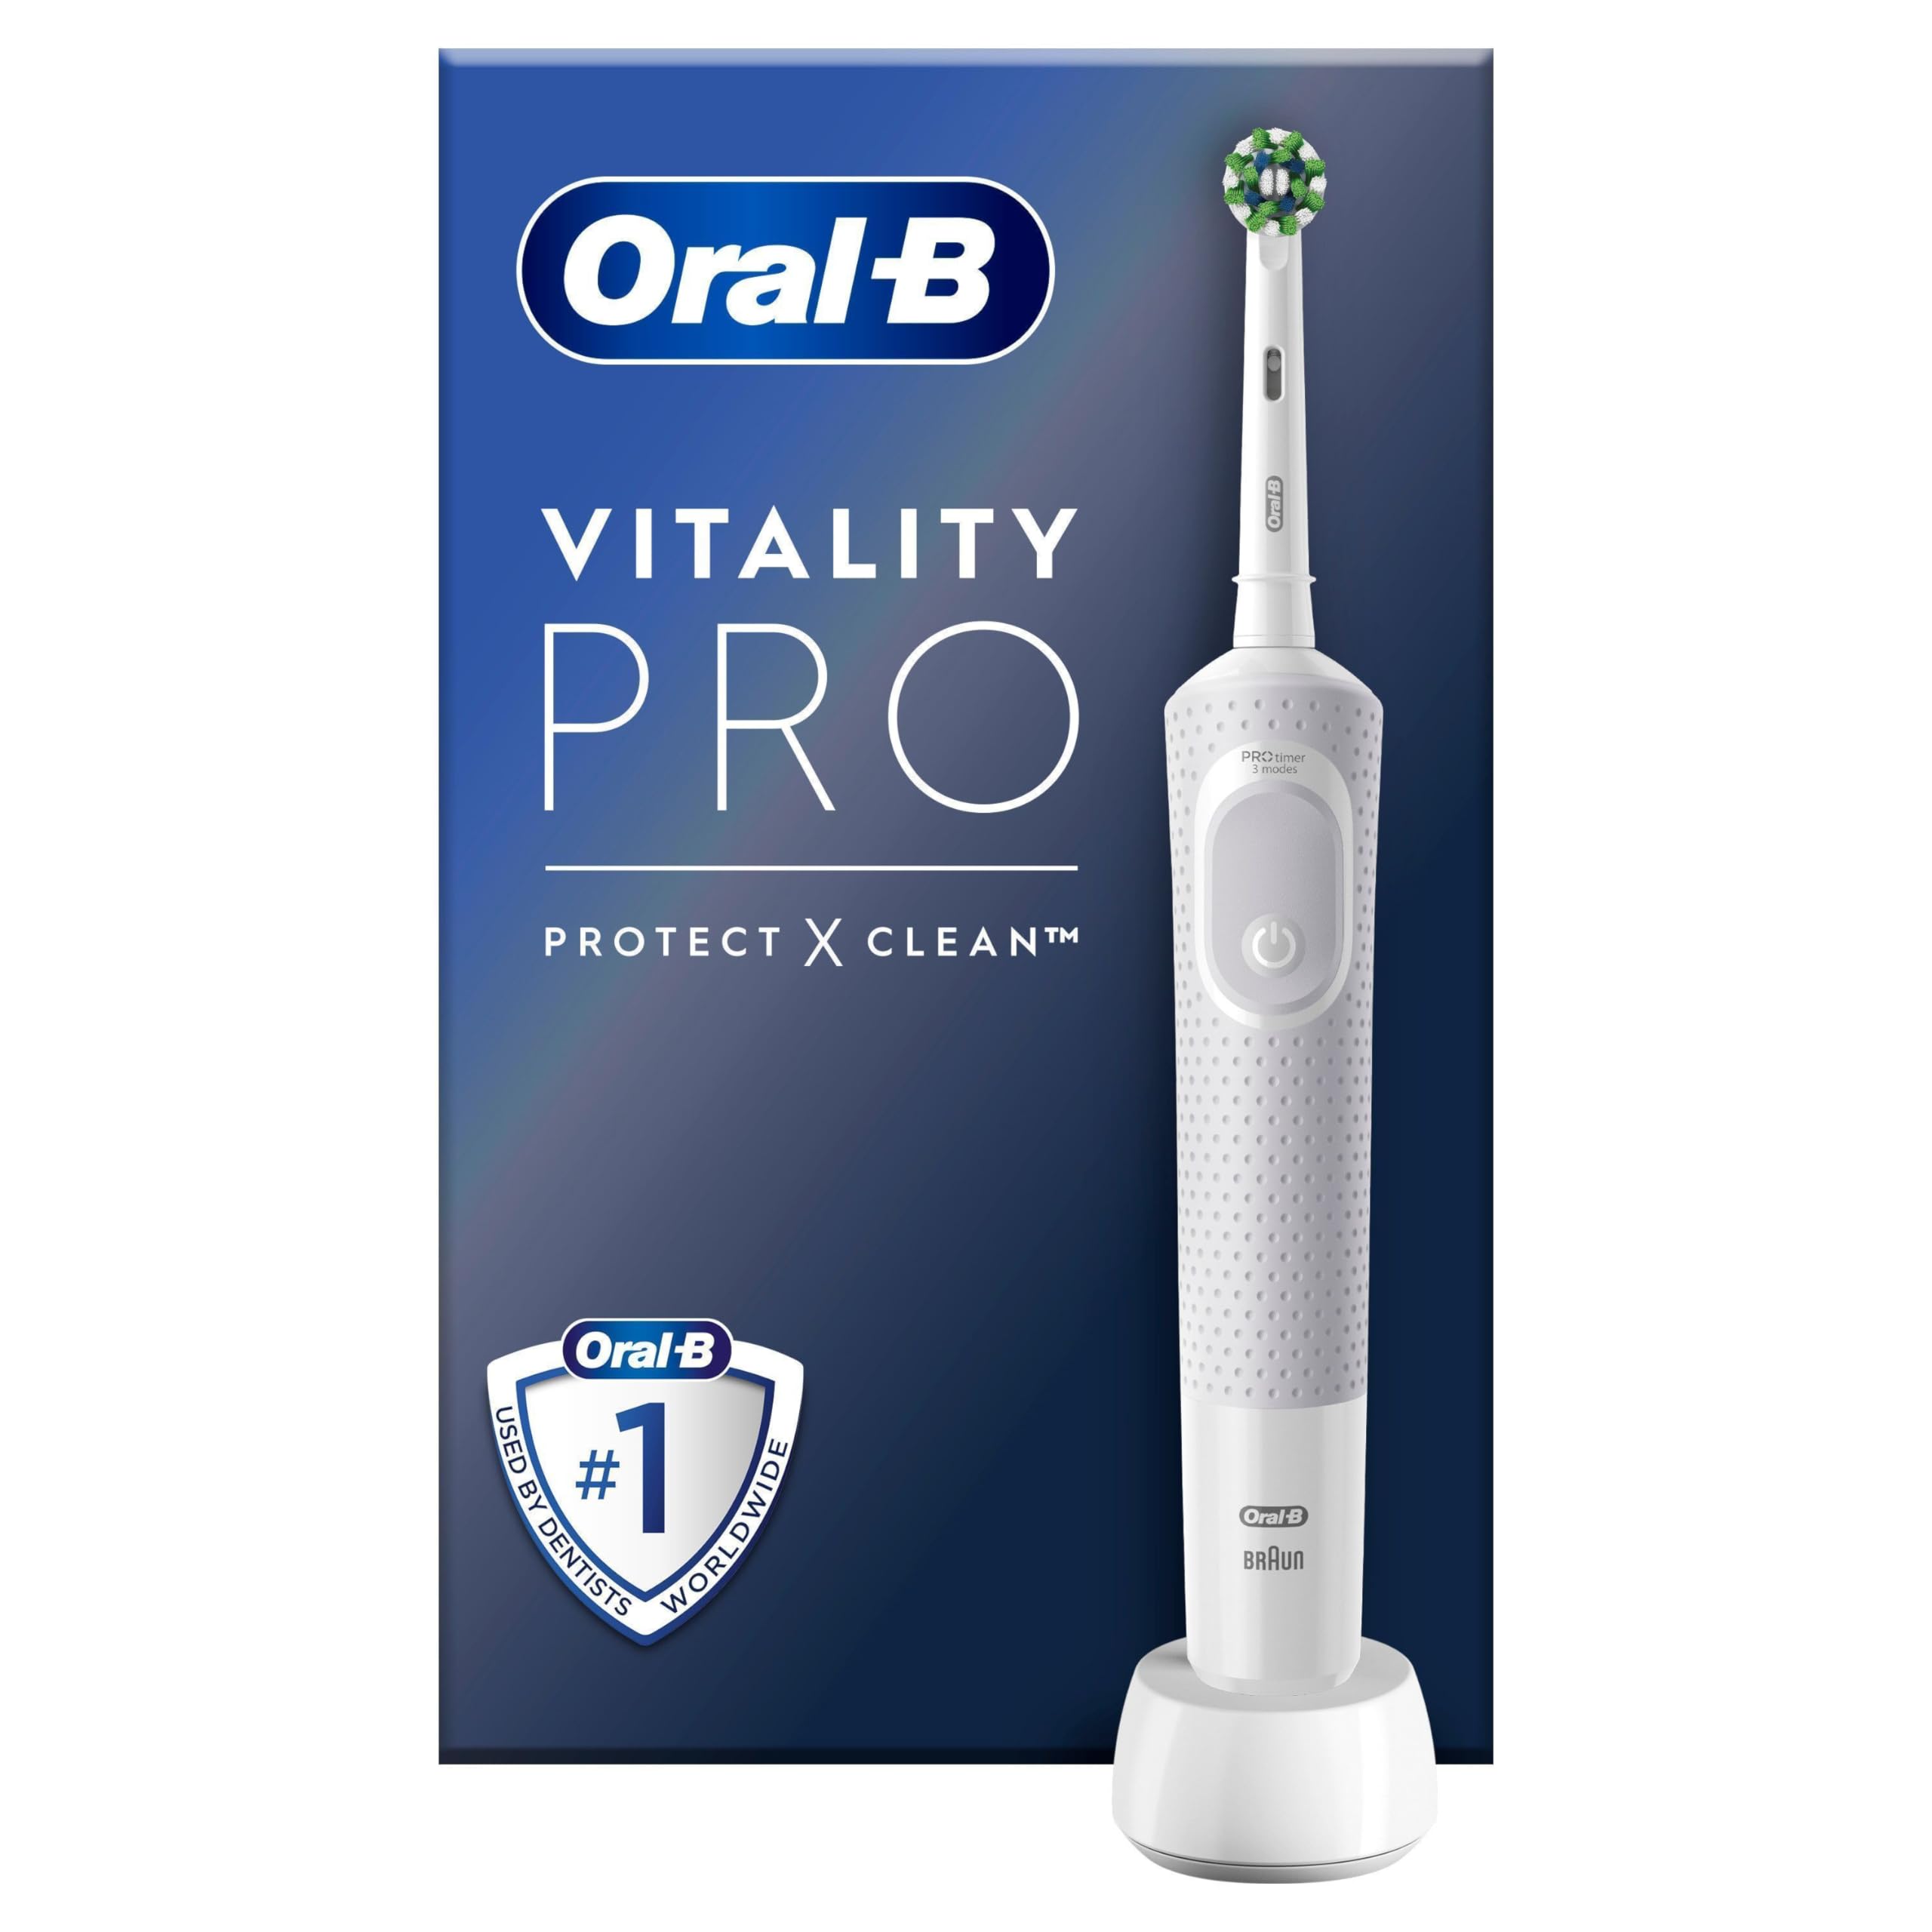 Oral-B Vitality Pro Elektrische Zahnbürste/Electric Toothbrush, 3 Putzmodi für Zahnpflege, Geschenk Mann/Frau, Designed by Braun, weiß